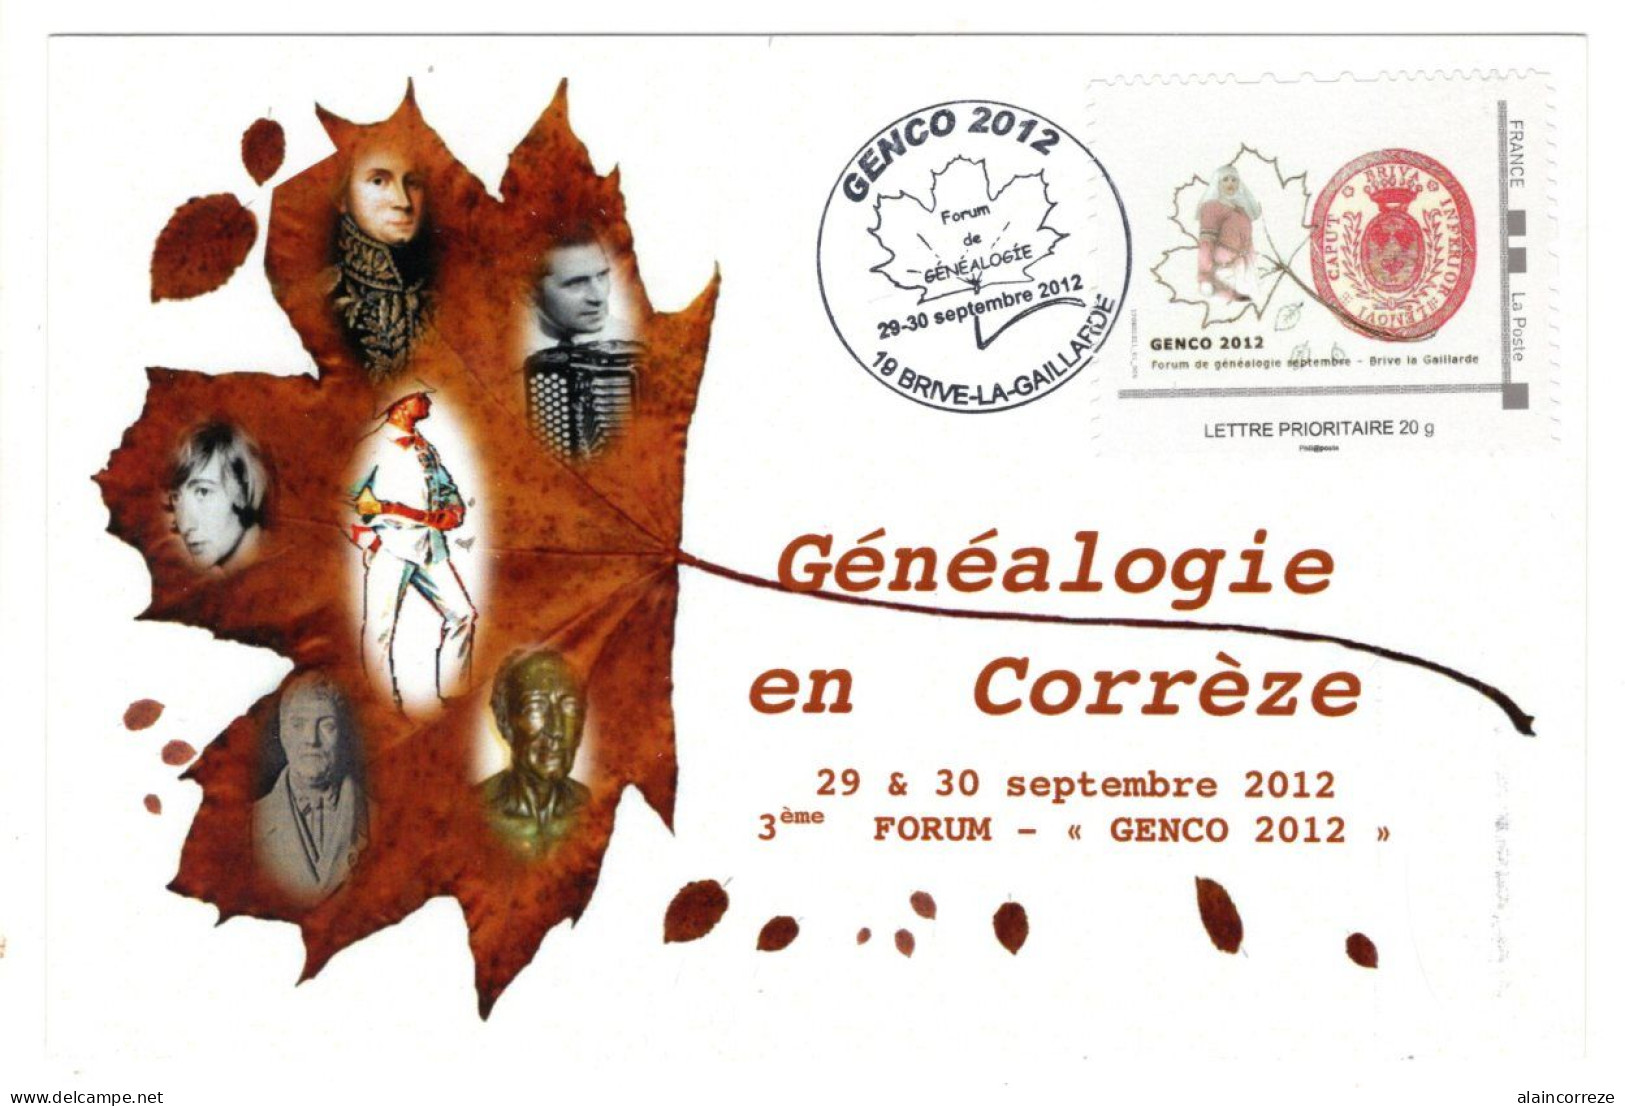 Carte Maximum Corrèze Brive GENCO 2012 Forum Généalogie Montimbramoi Feuille D'arbre - 2010-2019